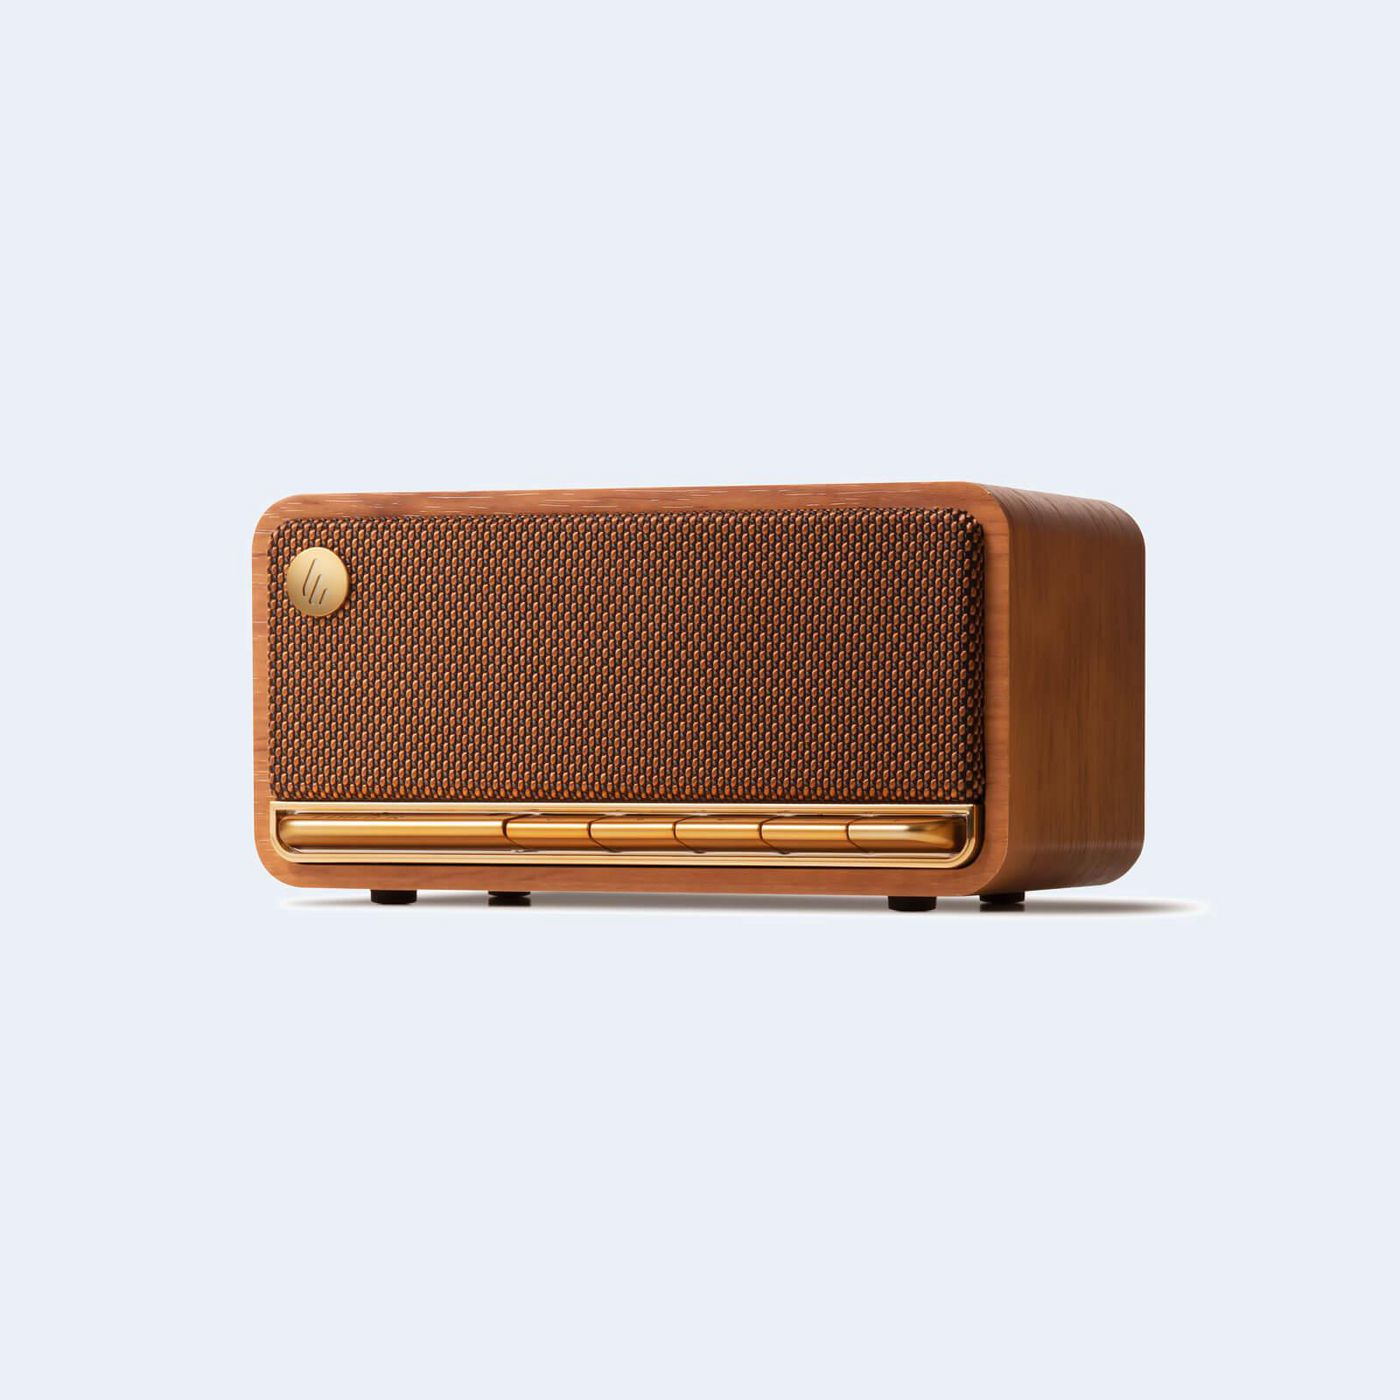 Edifier MP230 W128290924 Portable Speaker Bronze, Wood 